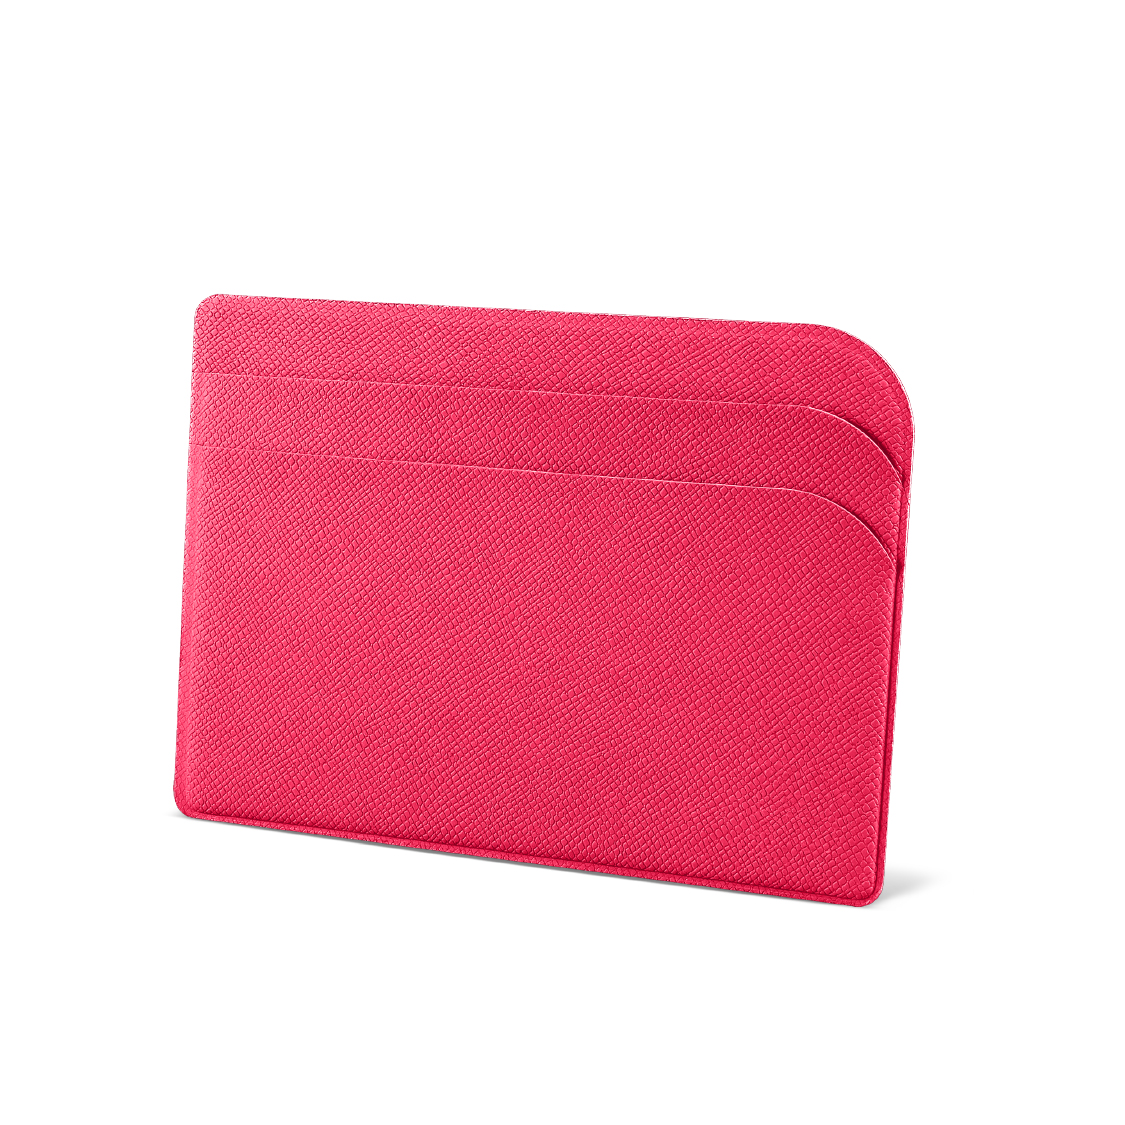 Кредитница/футляр для пластиковых карт малиновый Flexpocket. Цвет: розовый